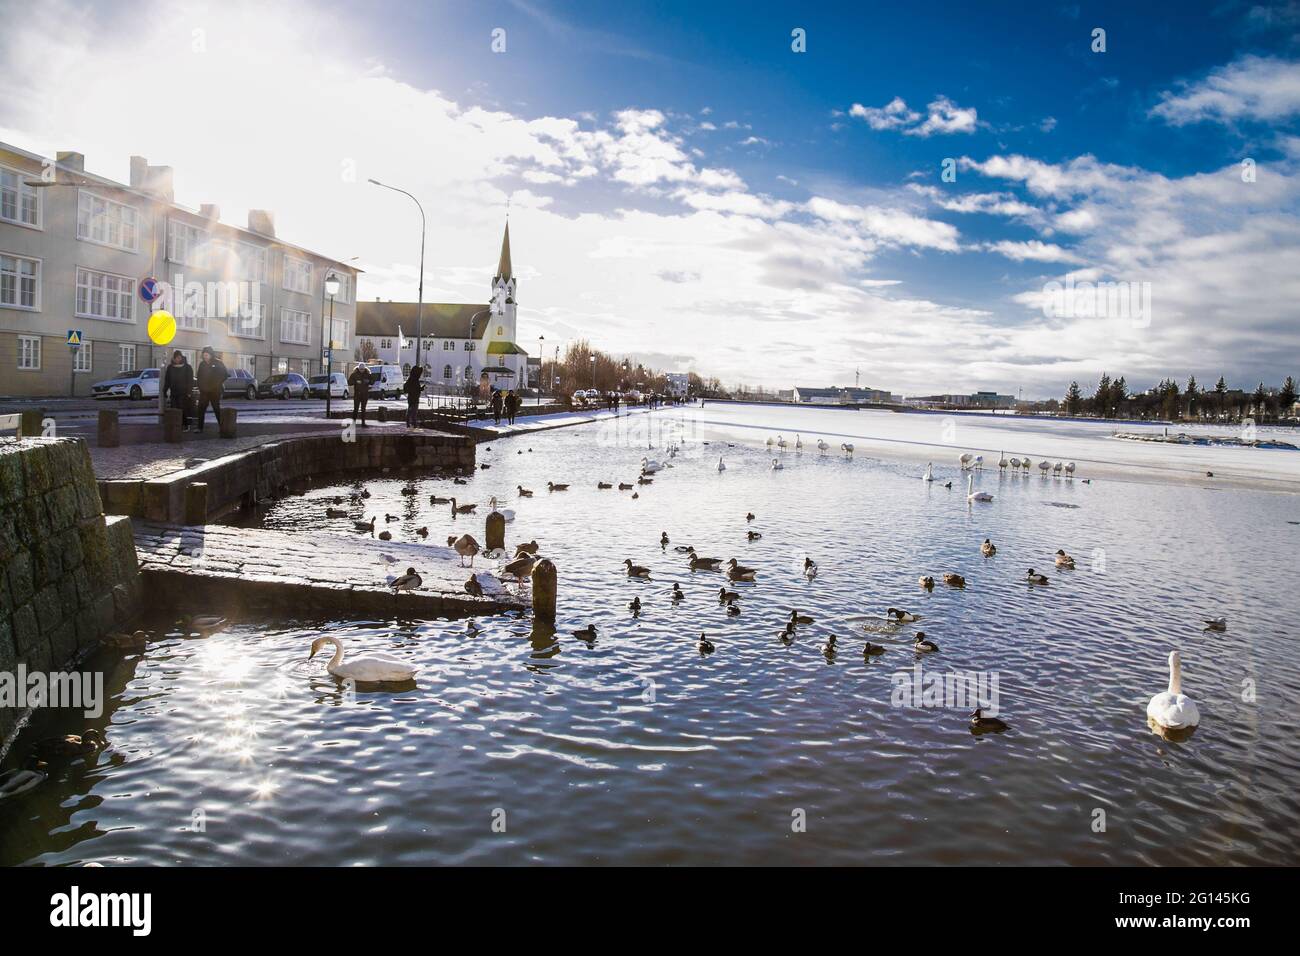 Reykjavic , Islande- 20 février 2020: Oiseaux sur un lac thermique de Tjornin dans le centre de la ville de Reykjavik. Islande. Vue sur la ville. Banque D'Images